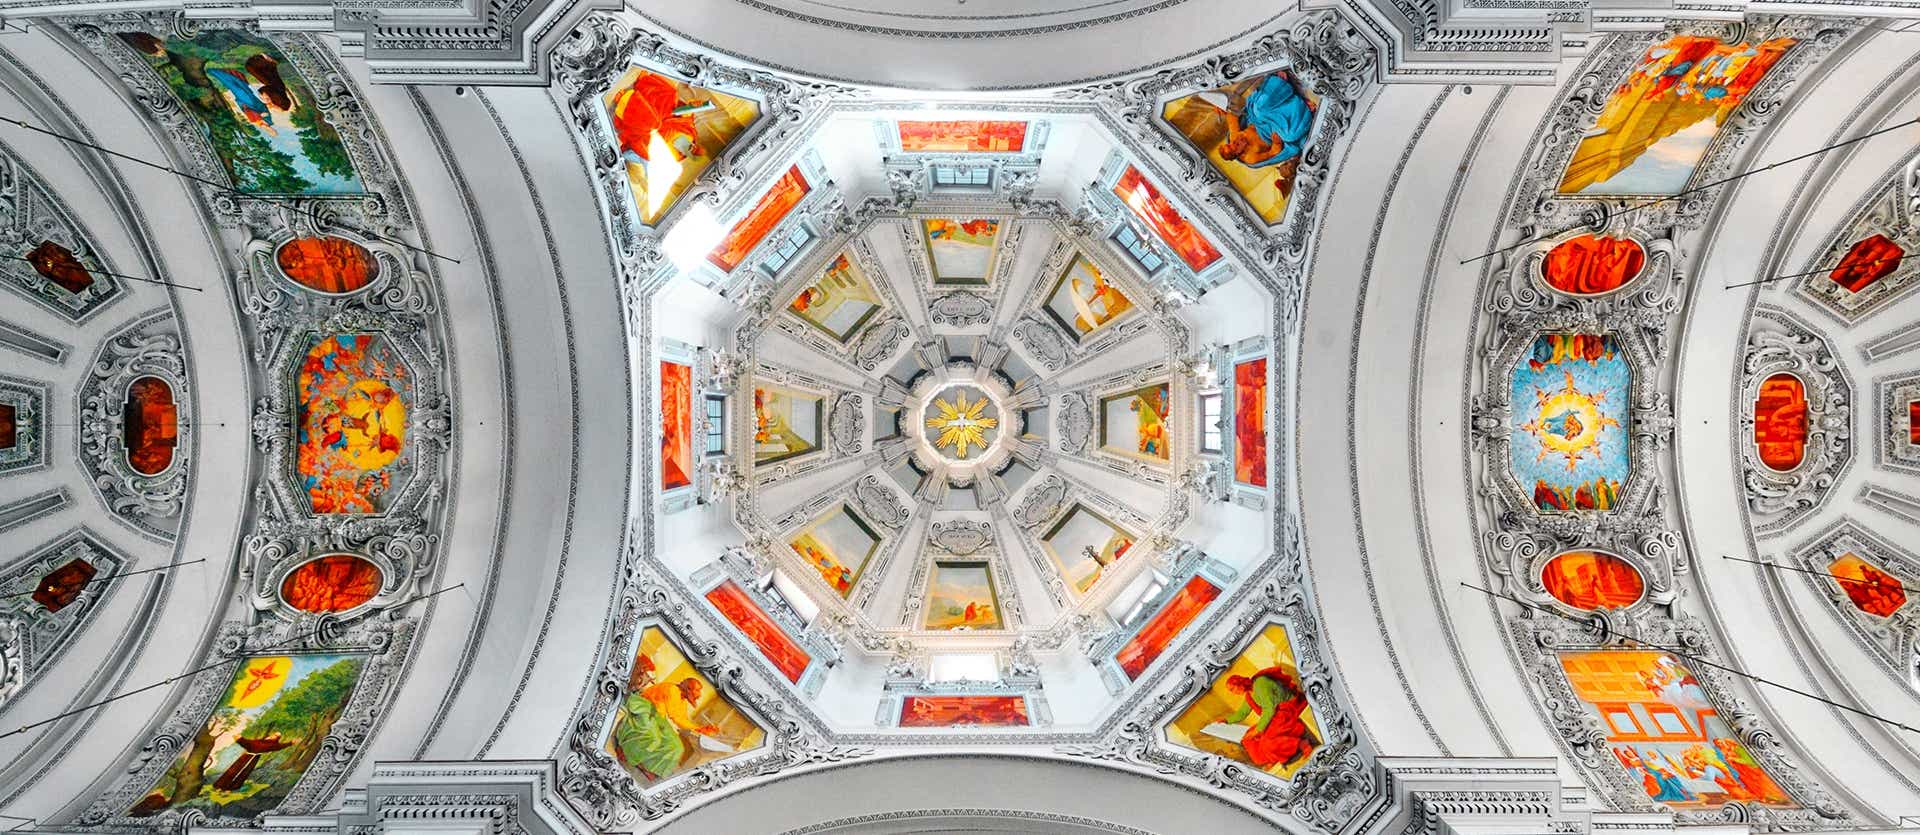 Interior de la Catedral de Salzburgo <span class="iconos separador"></span> Salzburg <span class="iconos separador"></span> Austria